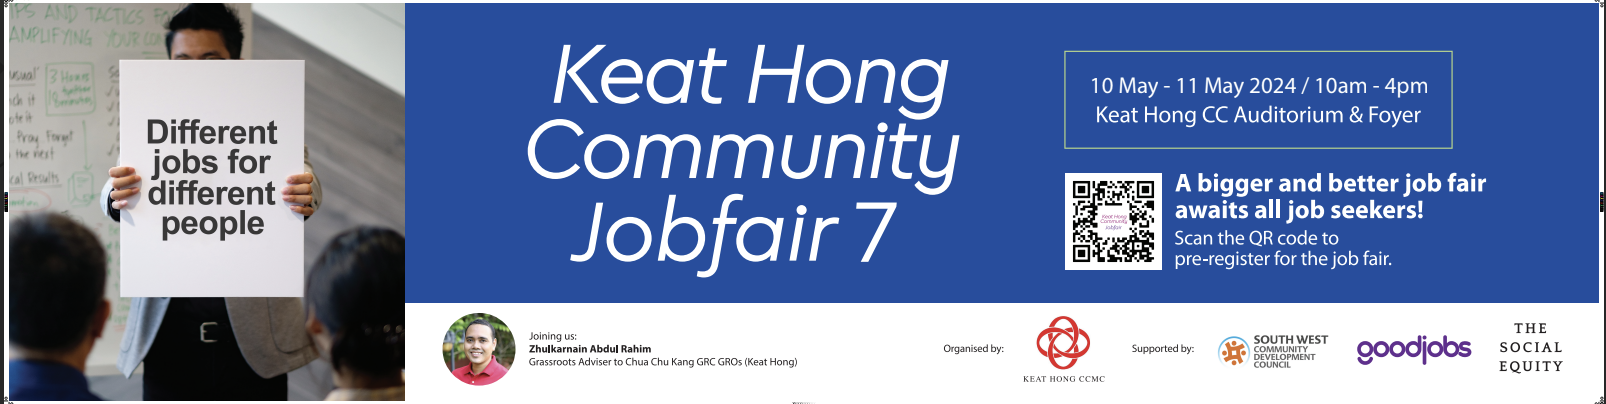 Keat Hong Community Job Fair 7